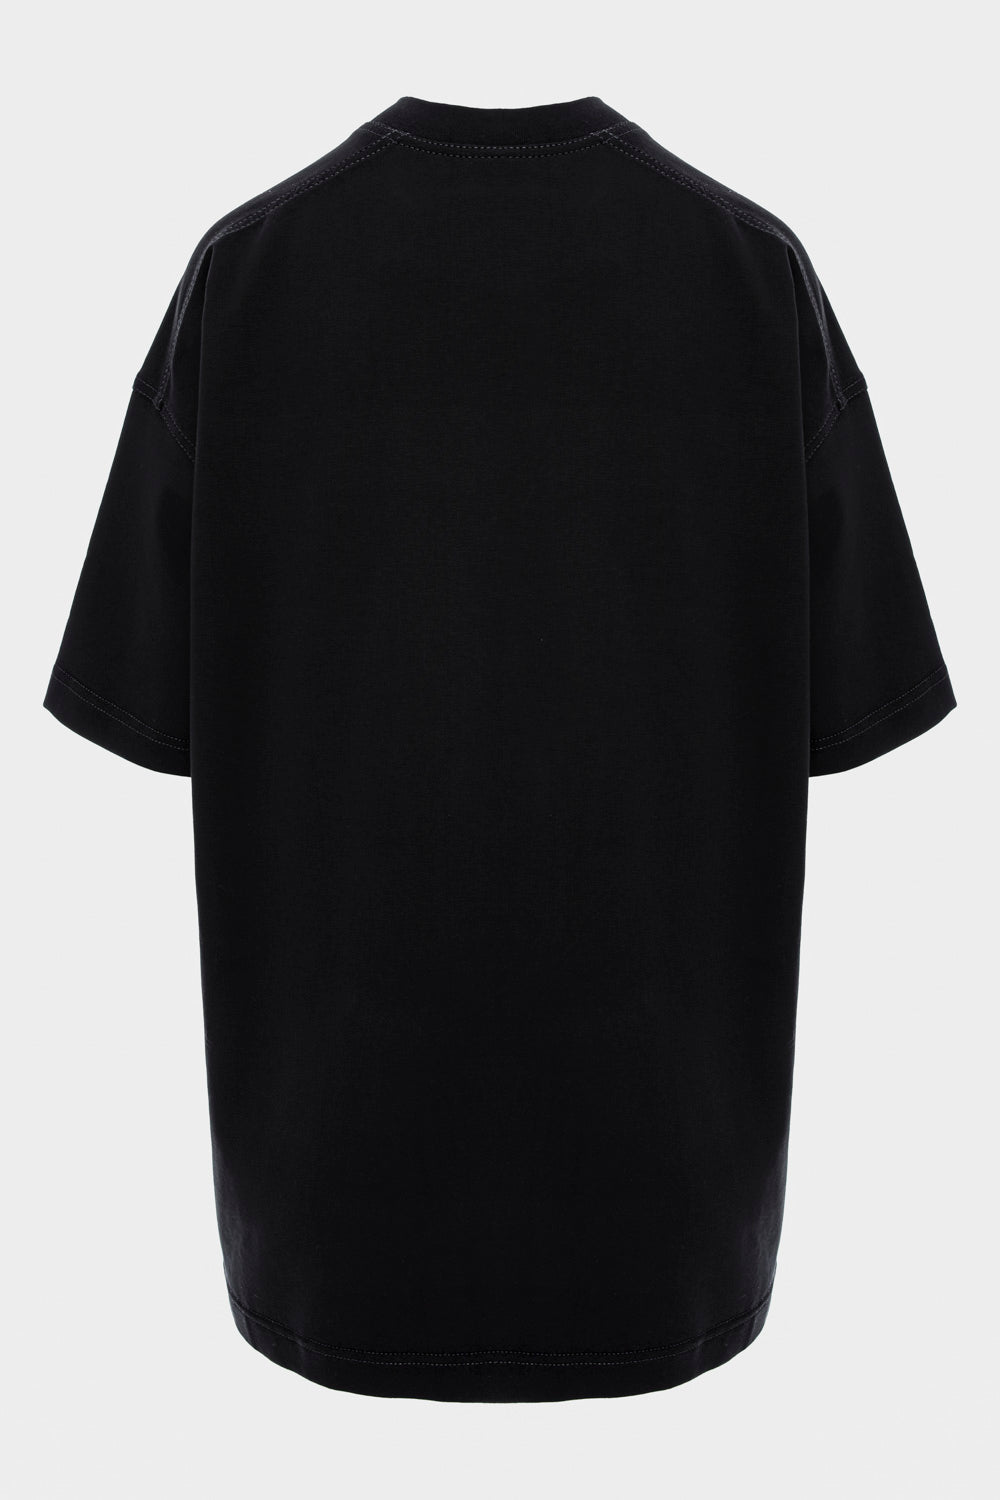 Rochie-tricou damă, neagră, imprimeu corset, bumbac premium, croială oversized, detalii elegante (imprimeu catifelat).